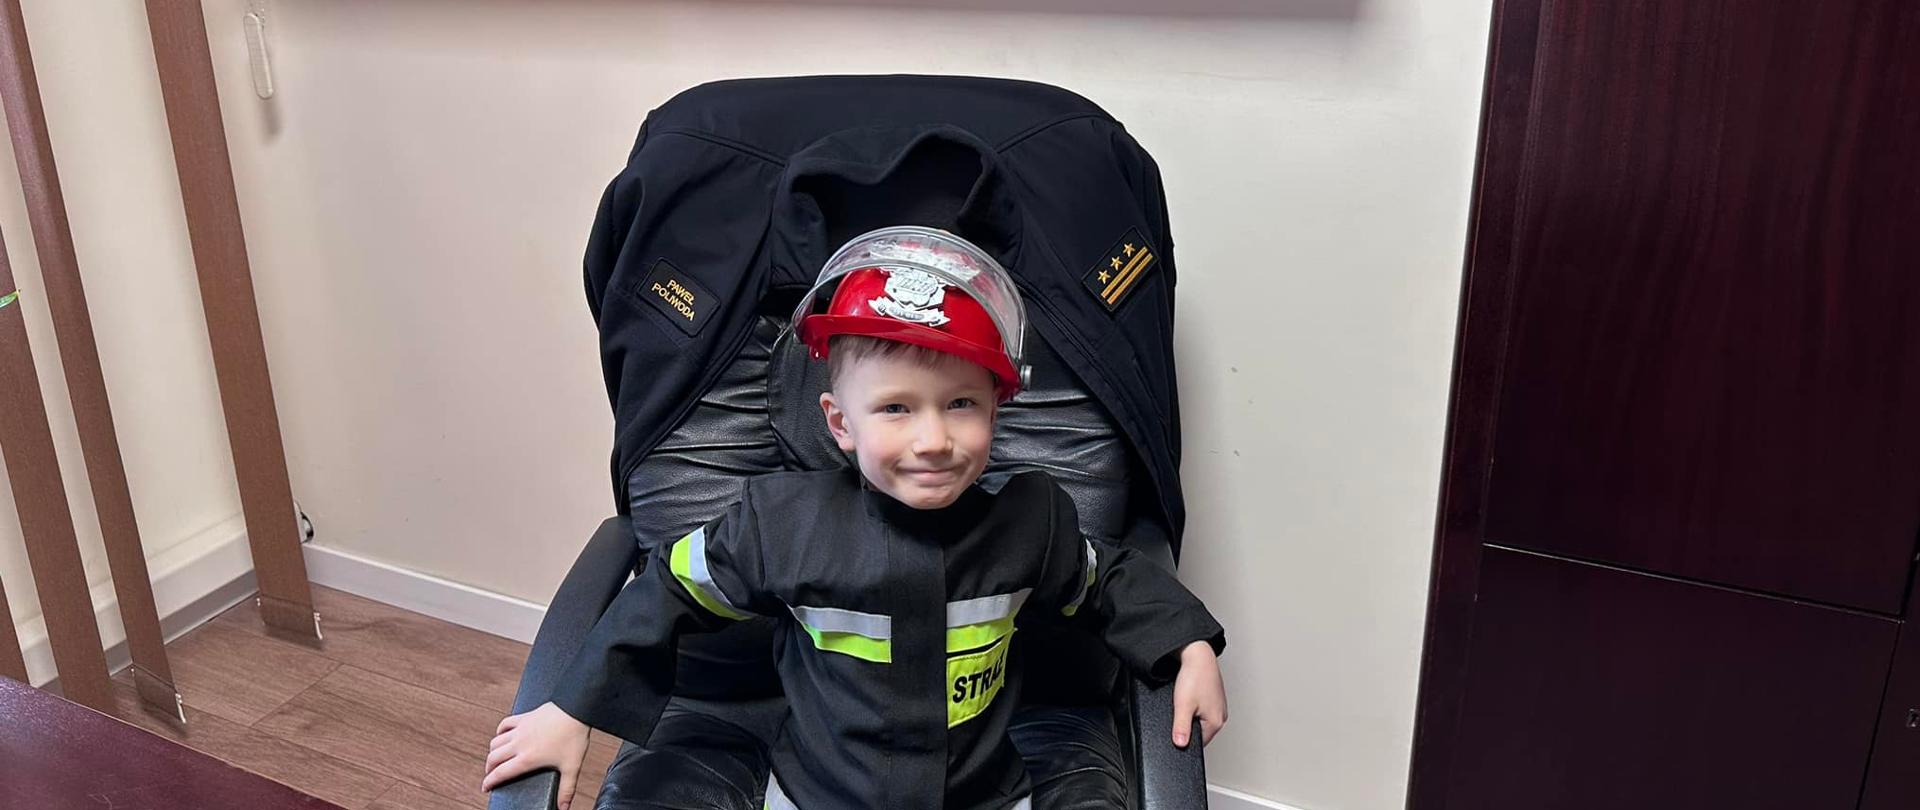 Na zdjęciu znajduje się chłopczyk ubrany w strój strażacki siedzący na fotelu przy biurku. W tle widać półkę z pucharami i zdjęciami